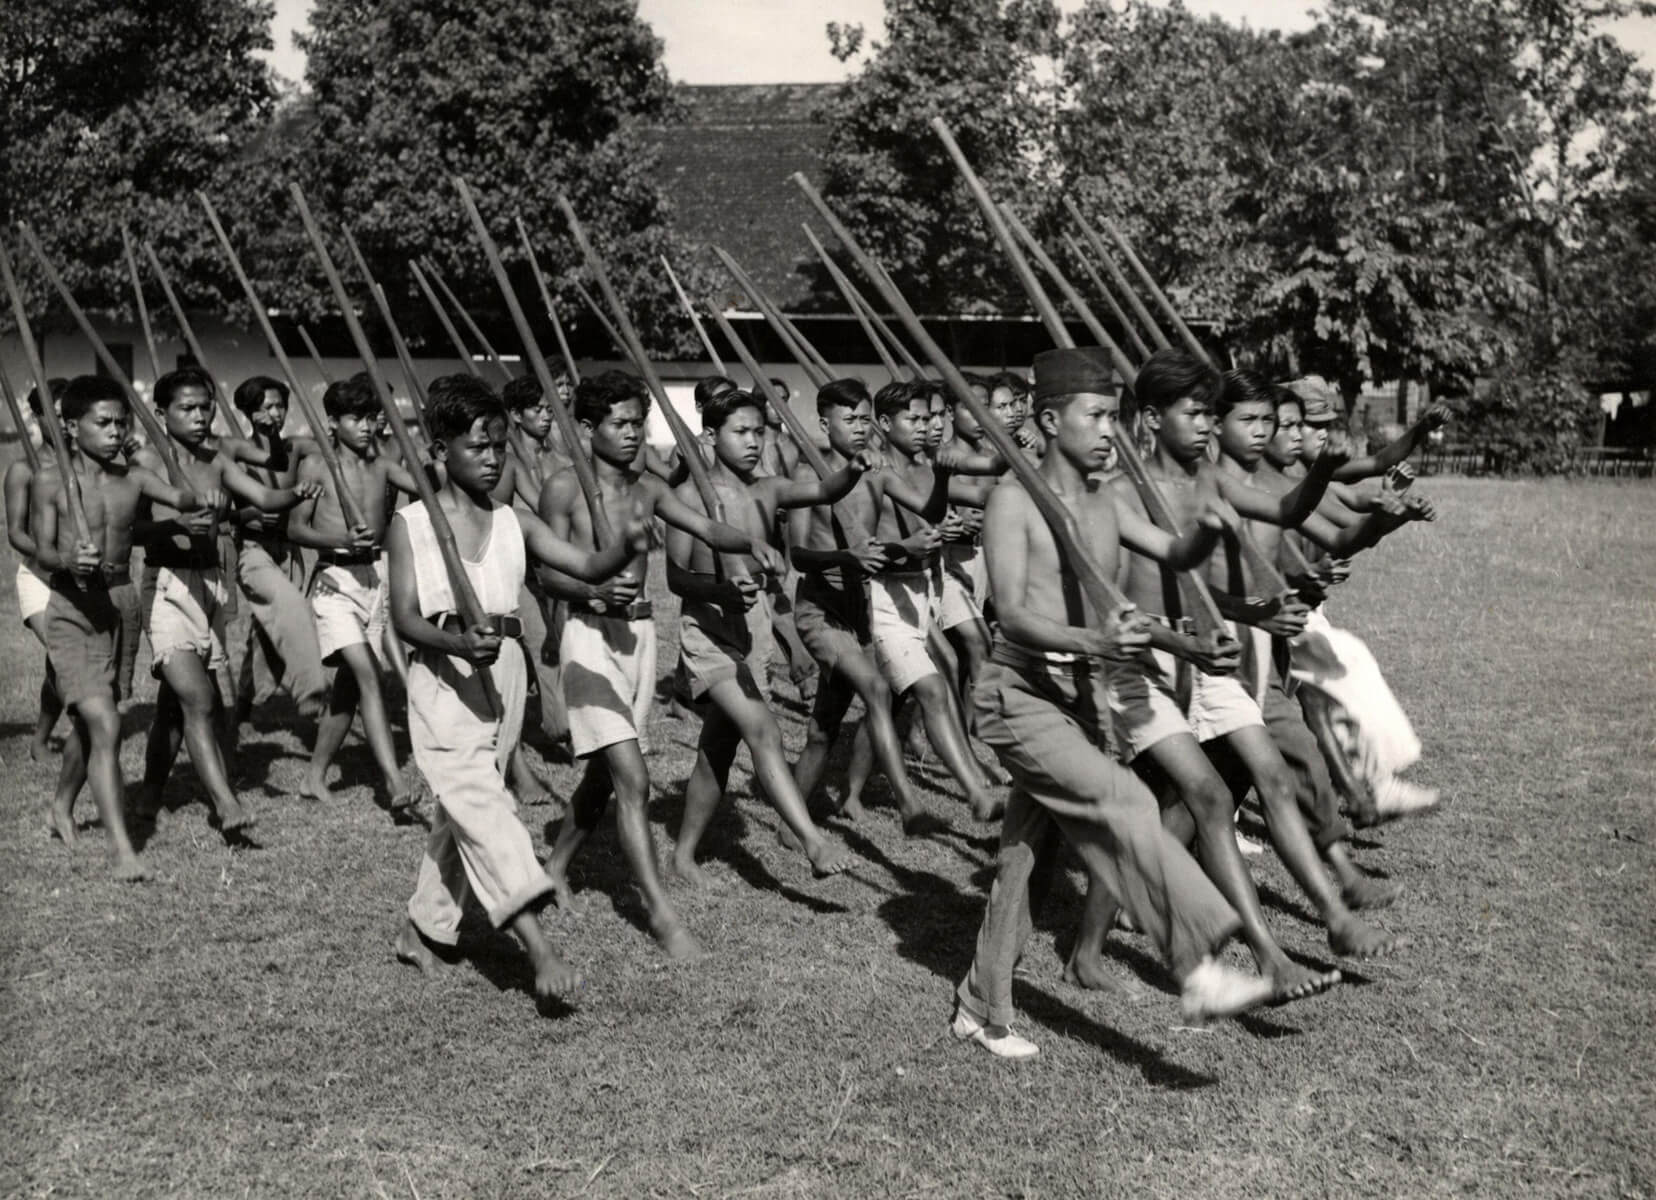 DeJong-Training van het Indonesische leger in 1949. Wikimediacommons